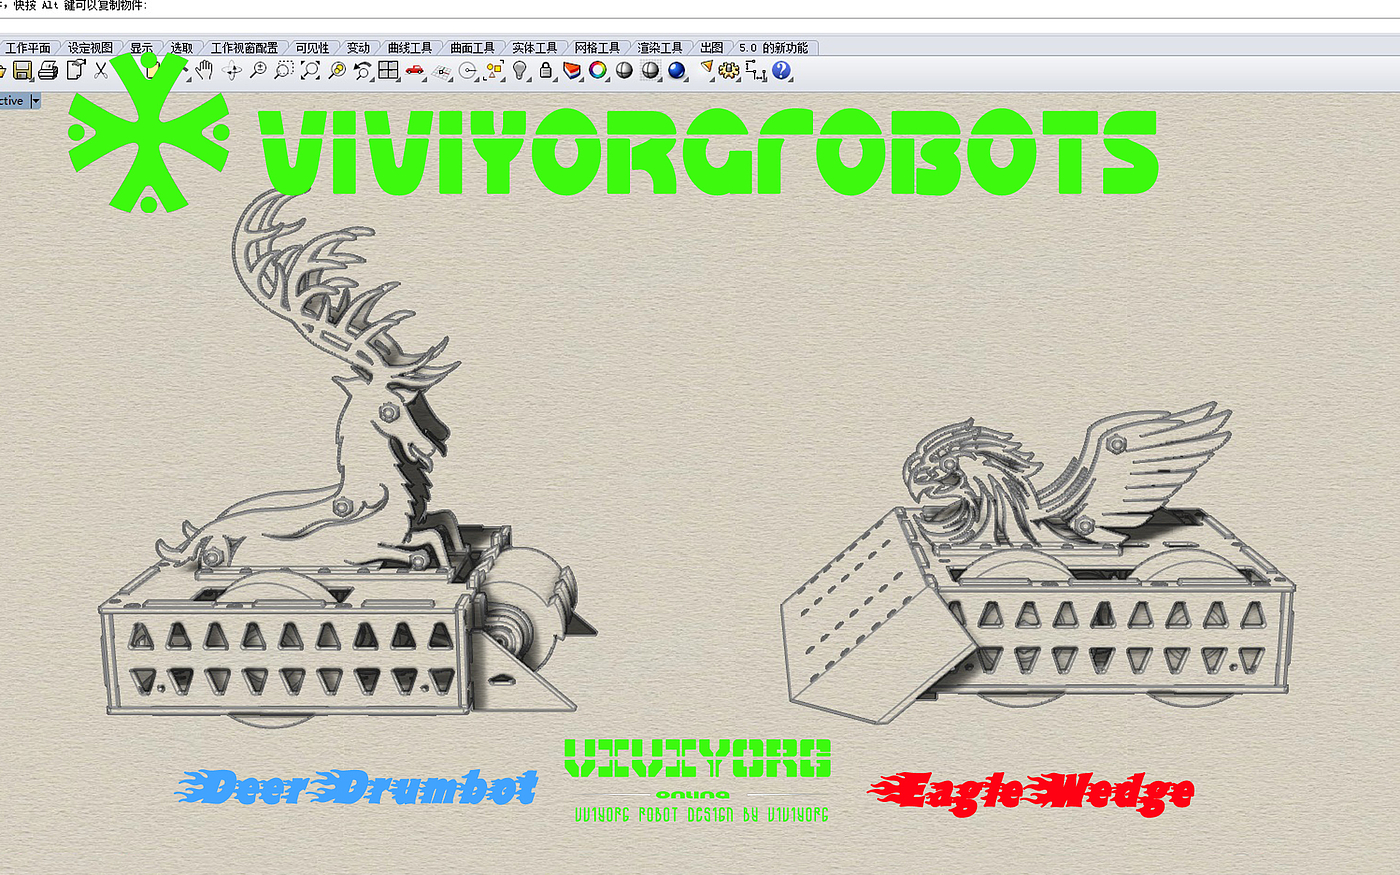 格斗机器人，对战机器人，AGV赛车，Robot Wars，RobotGames，BattleBots，RoboMasters，